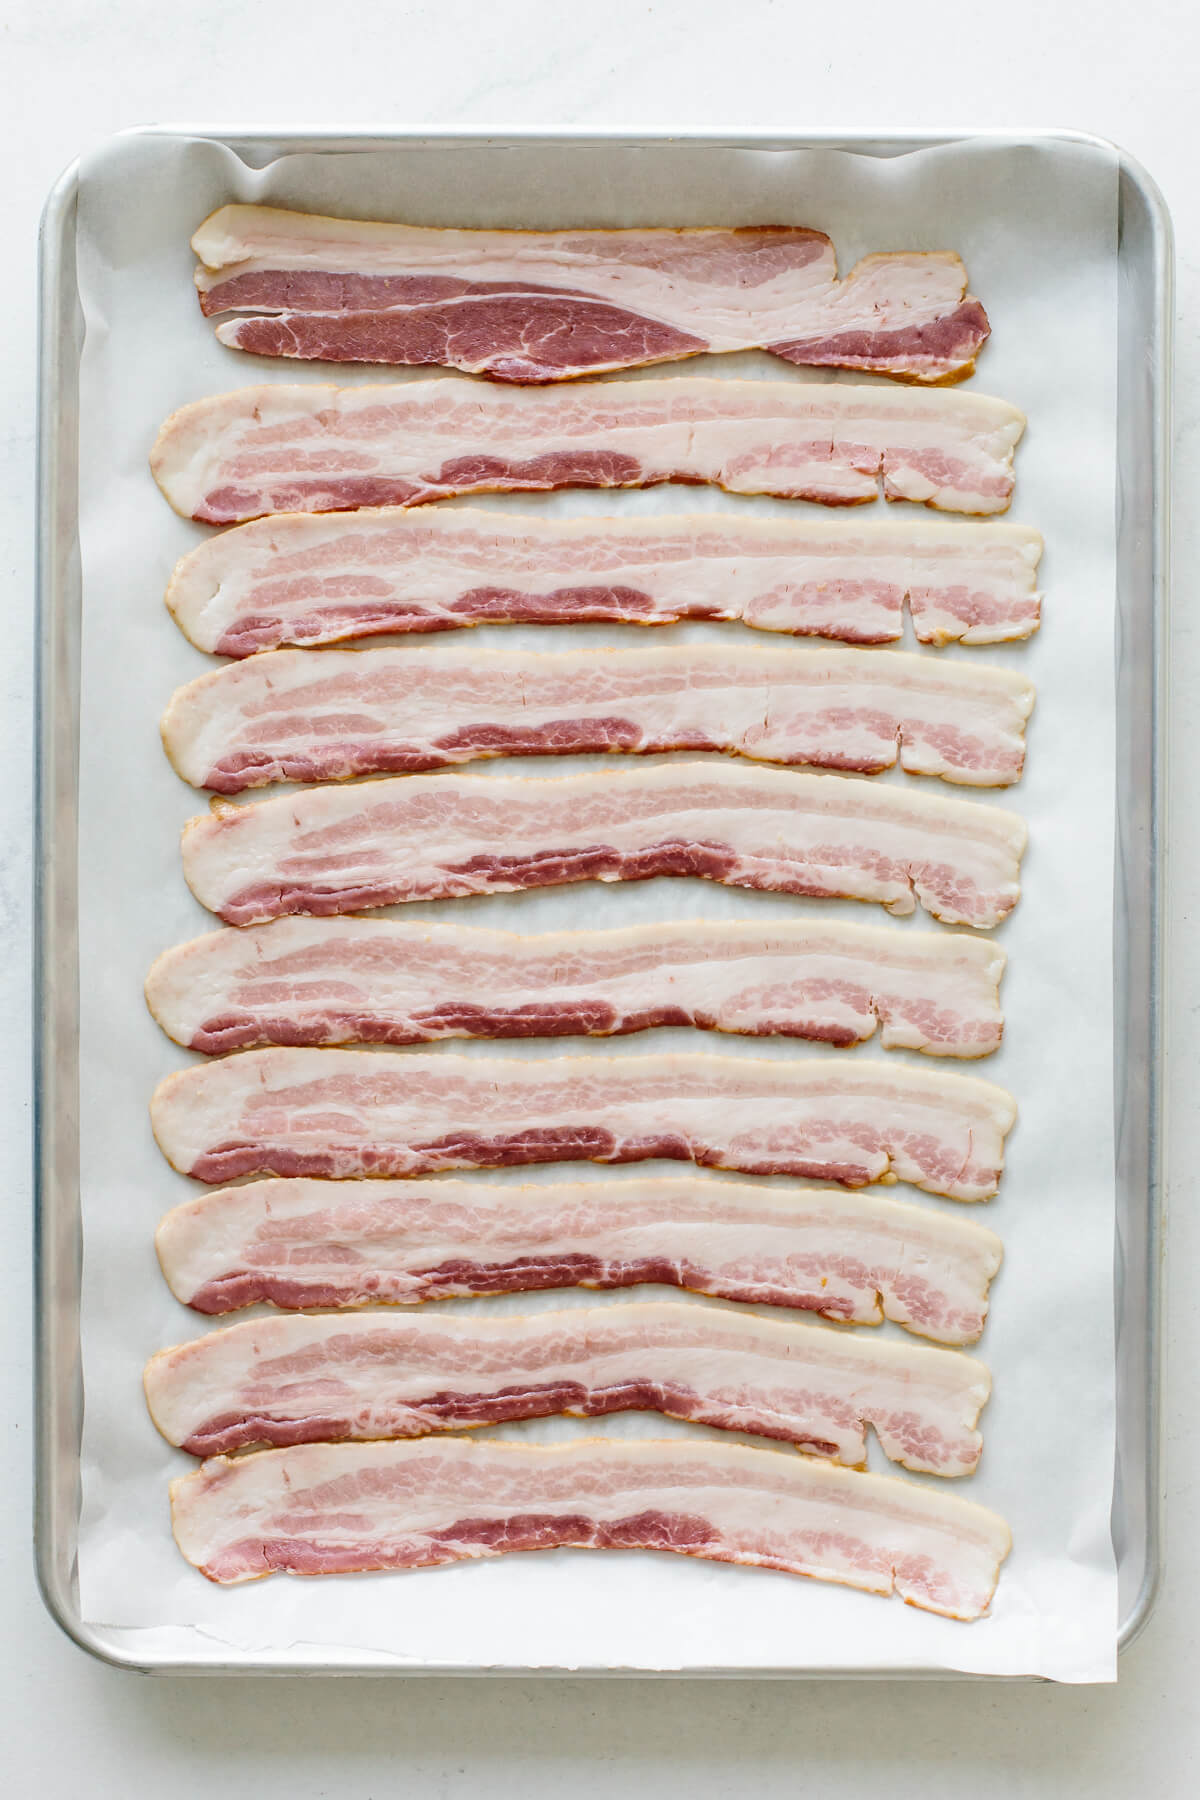 Raw bacon on a sheet tray.